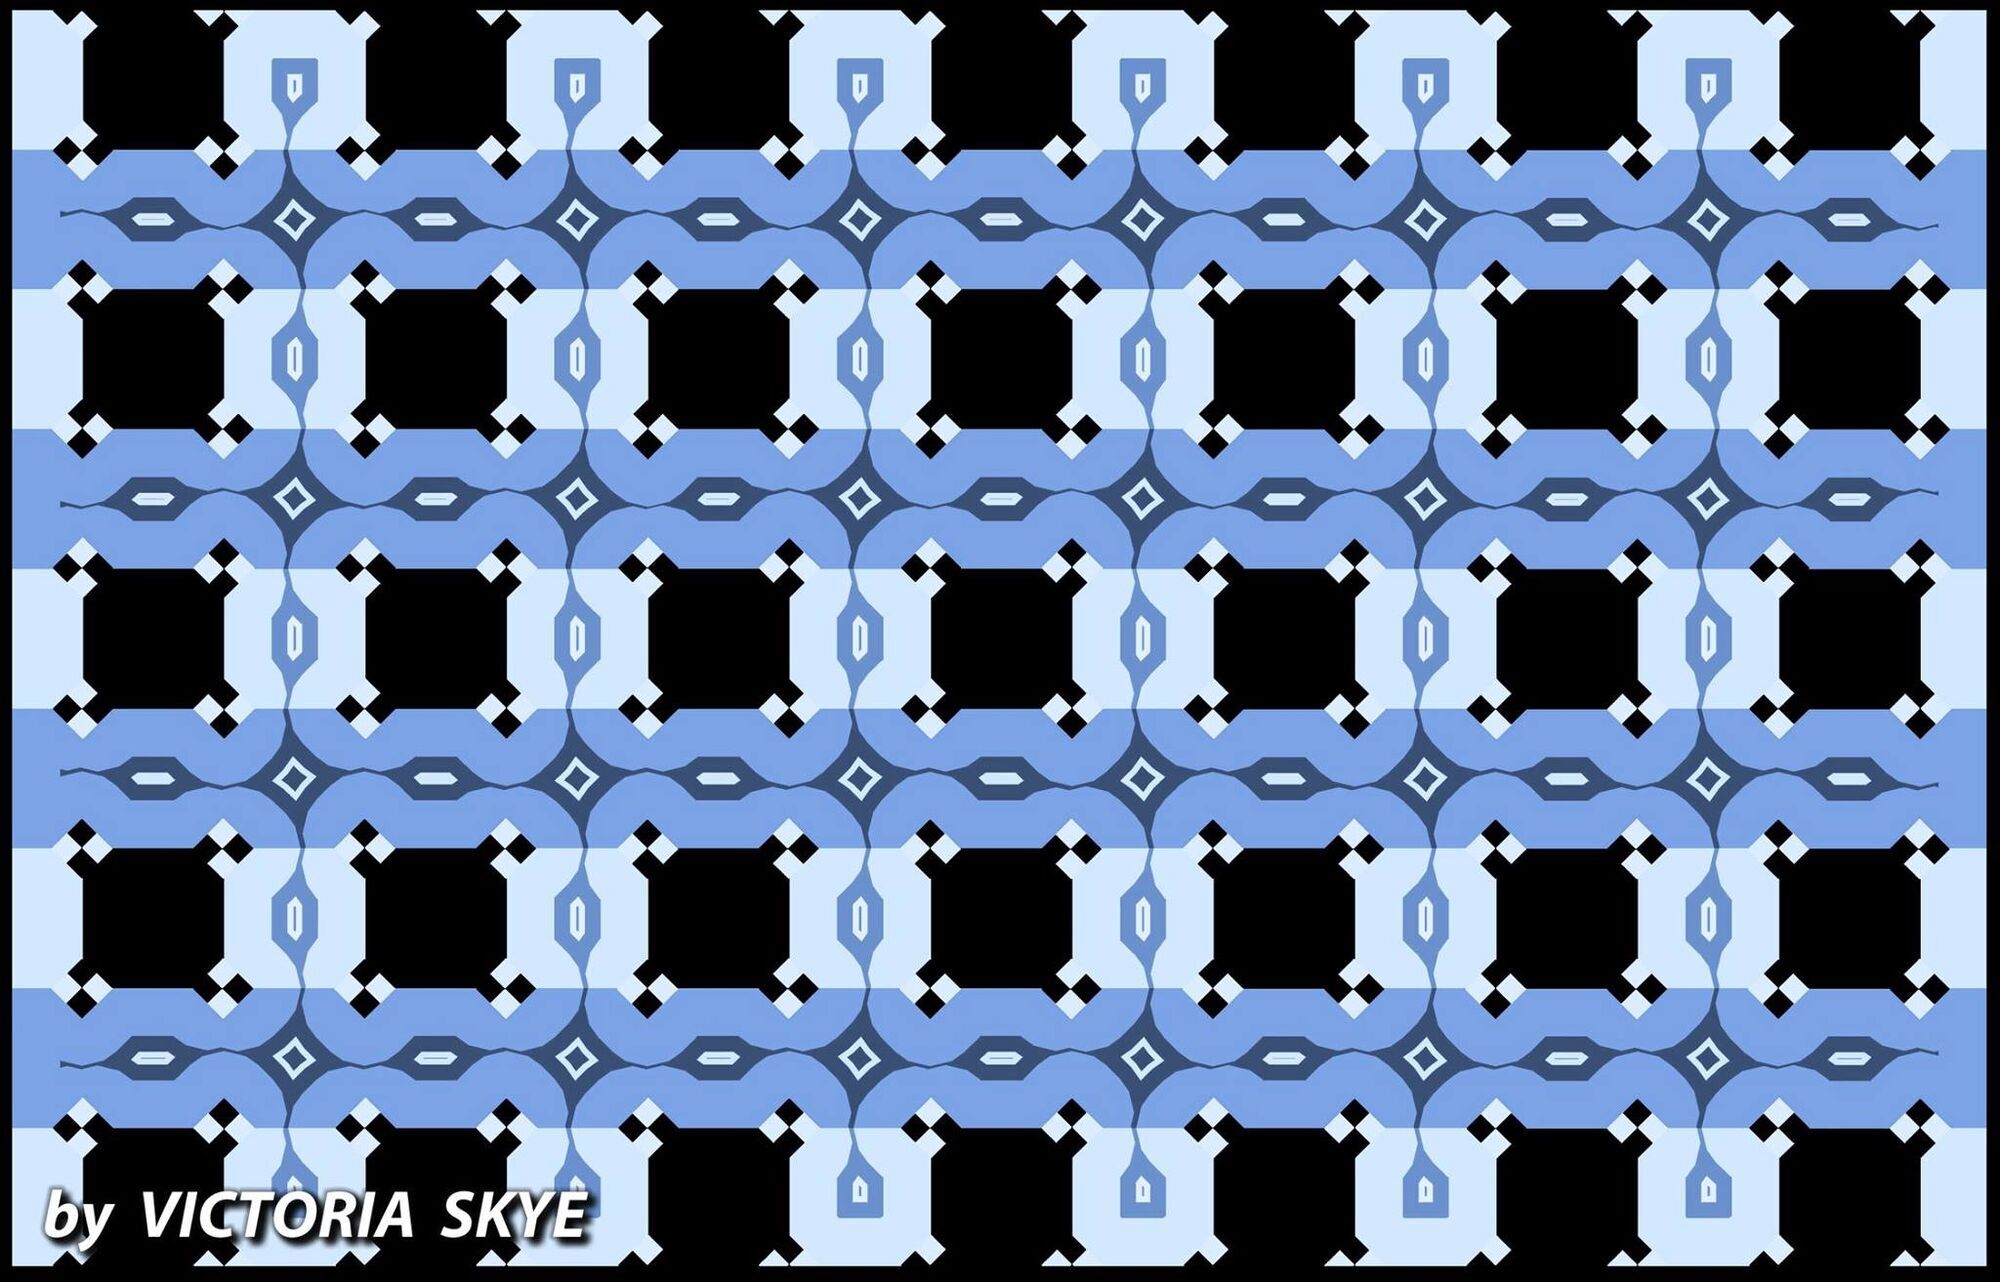 Оптическая иллюзия Café Wall, автор которой – иллюзионист Виктория Скай